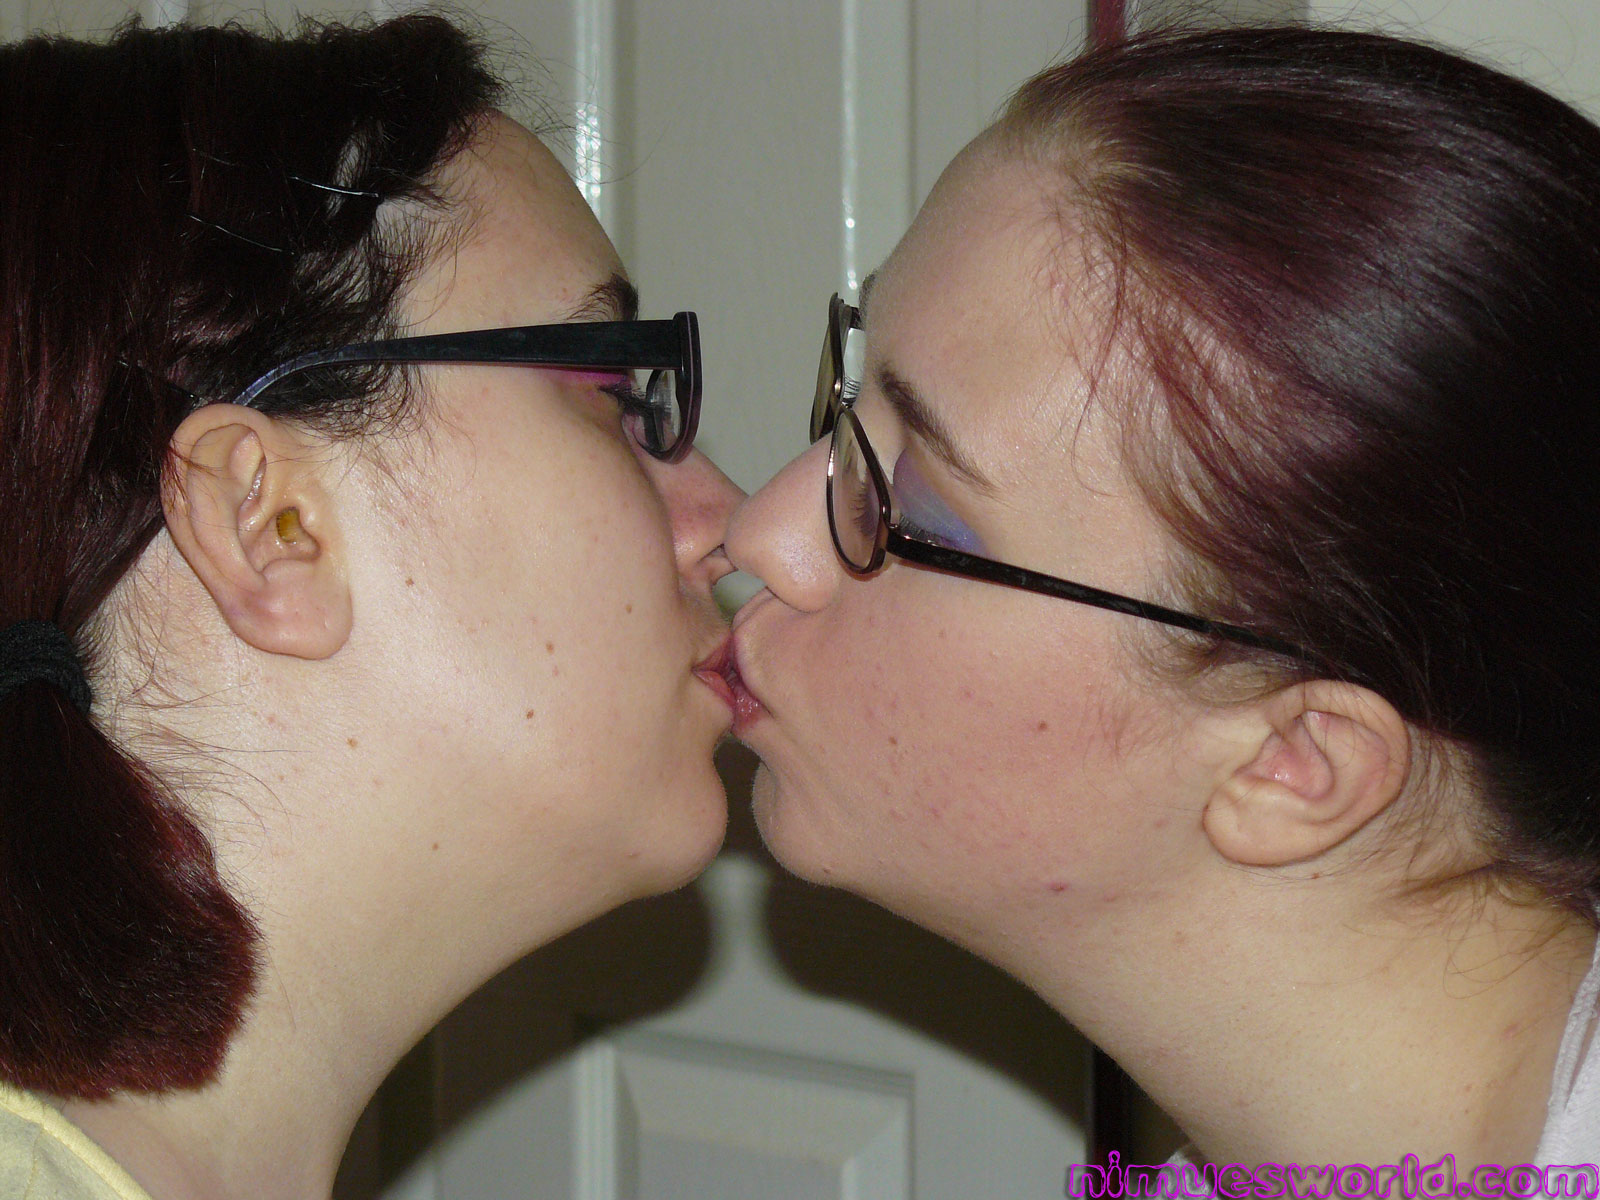 Amateur Lesbian Kiss - Real Lesbian Kiss Amateur - Best Sex Pics, Free XXX Images and Hot Porn  Photos on www.slashporn.net